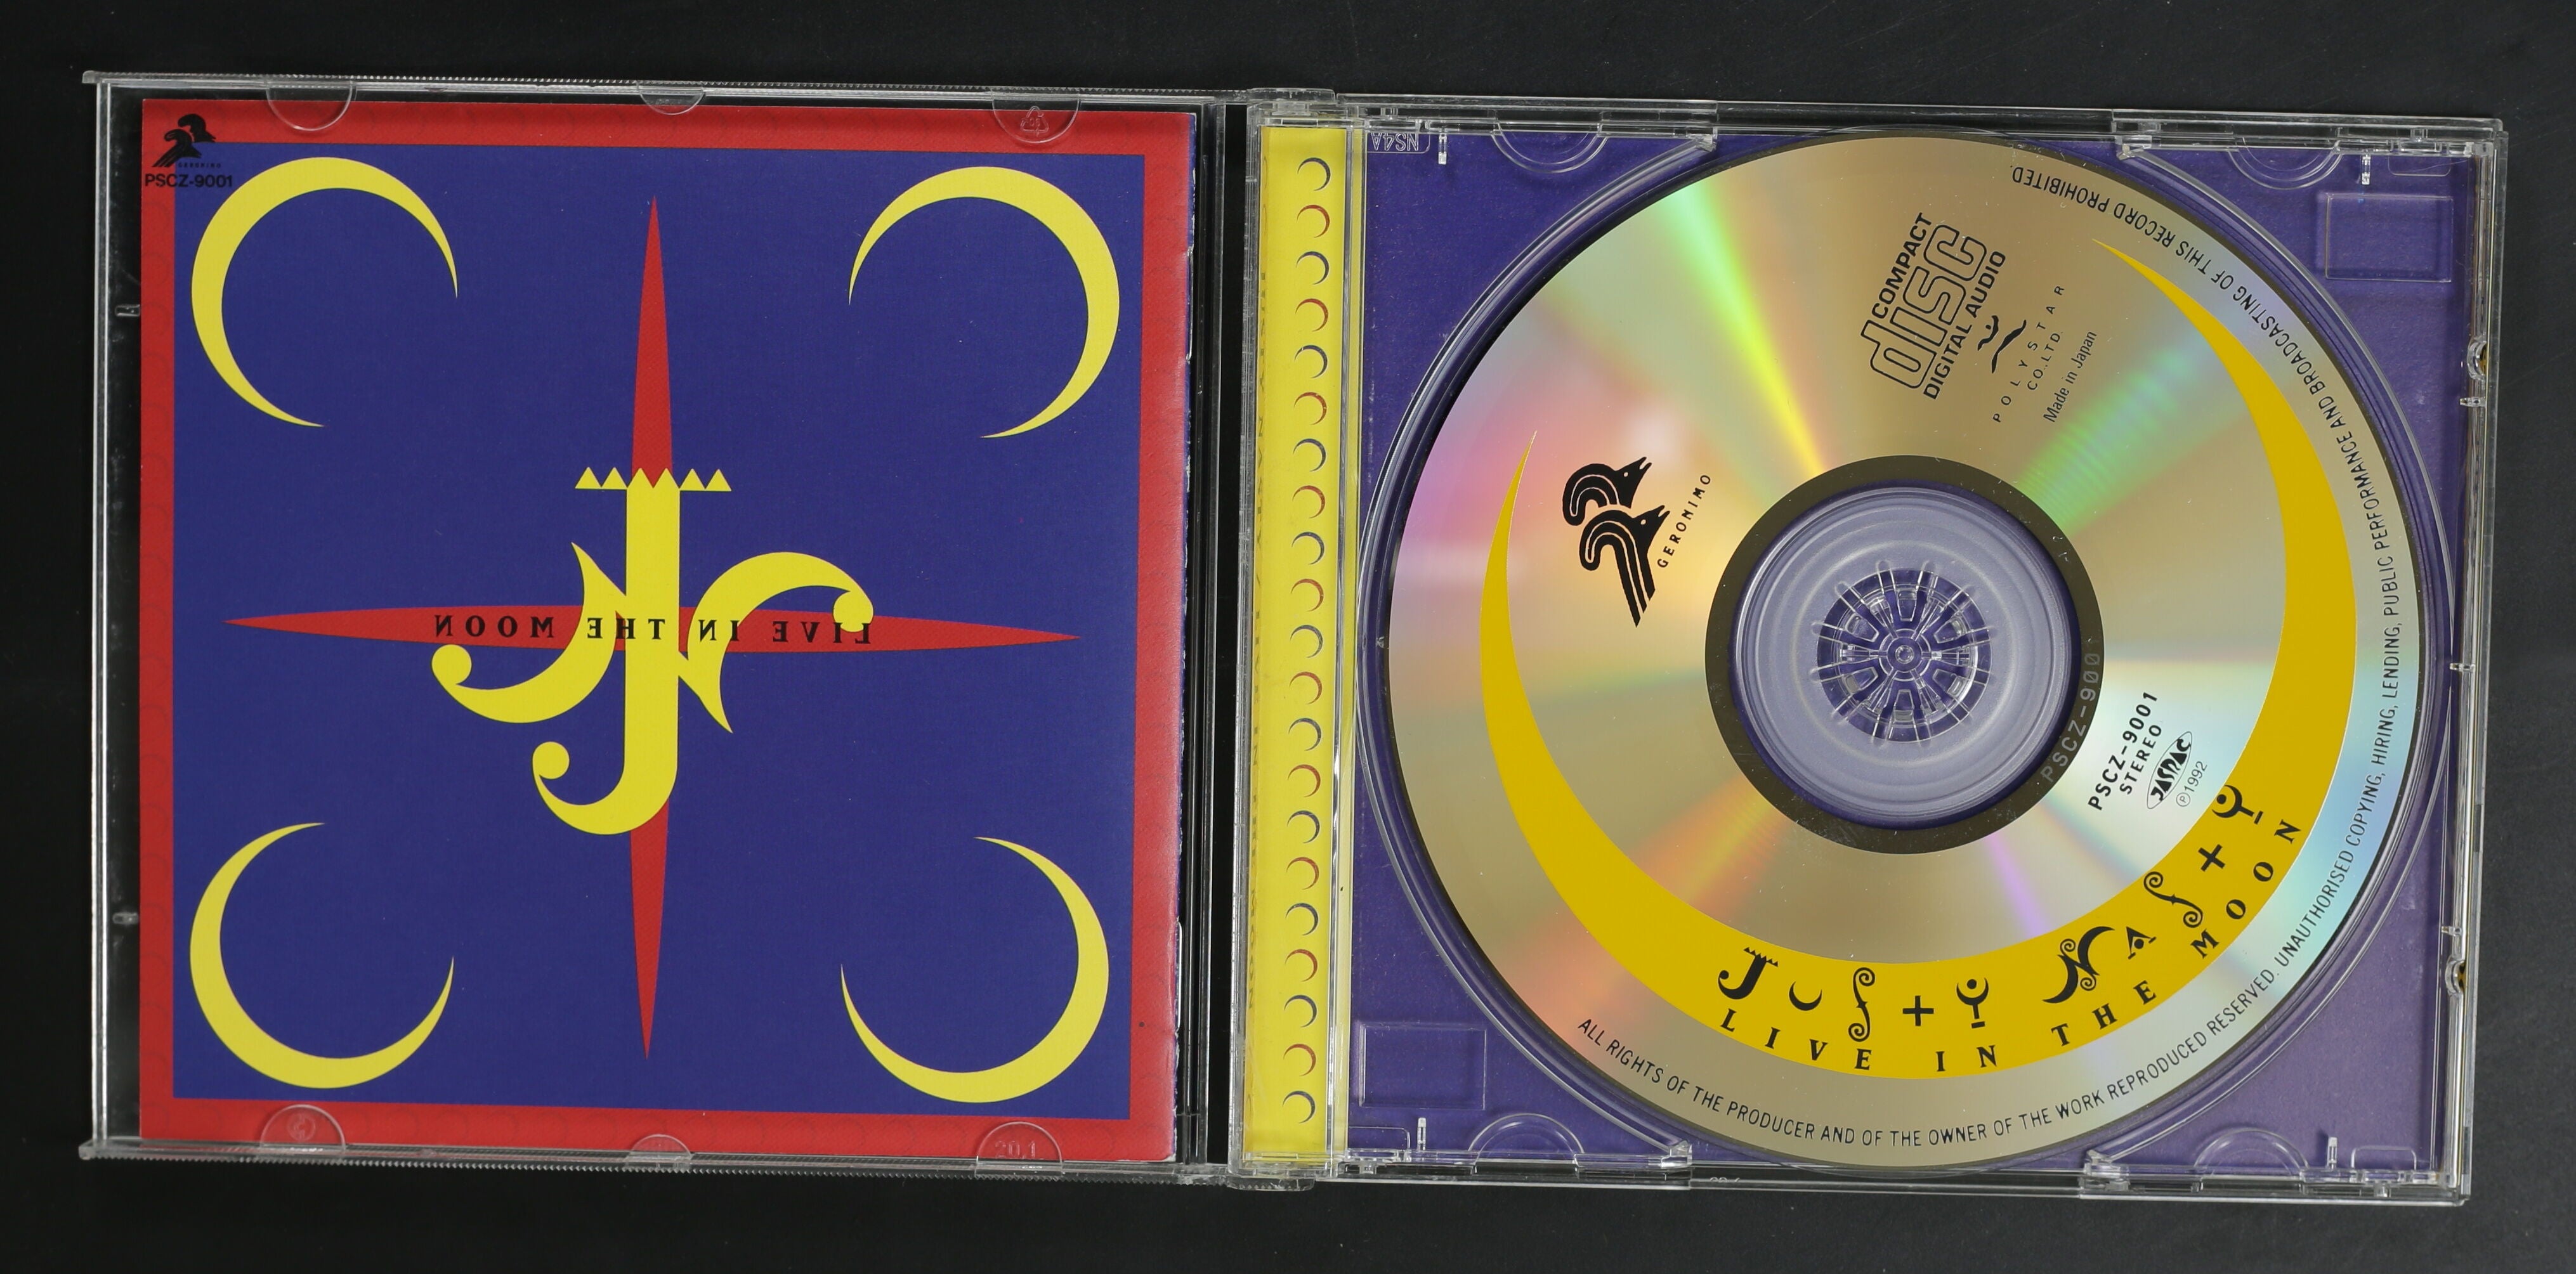 ジャスティ・ナスティ JUSTY-NASTY / LIVE IN THE MOON – かすみレコード